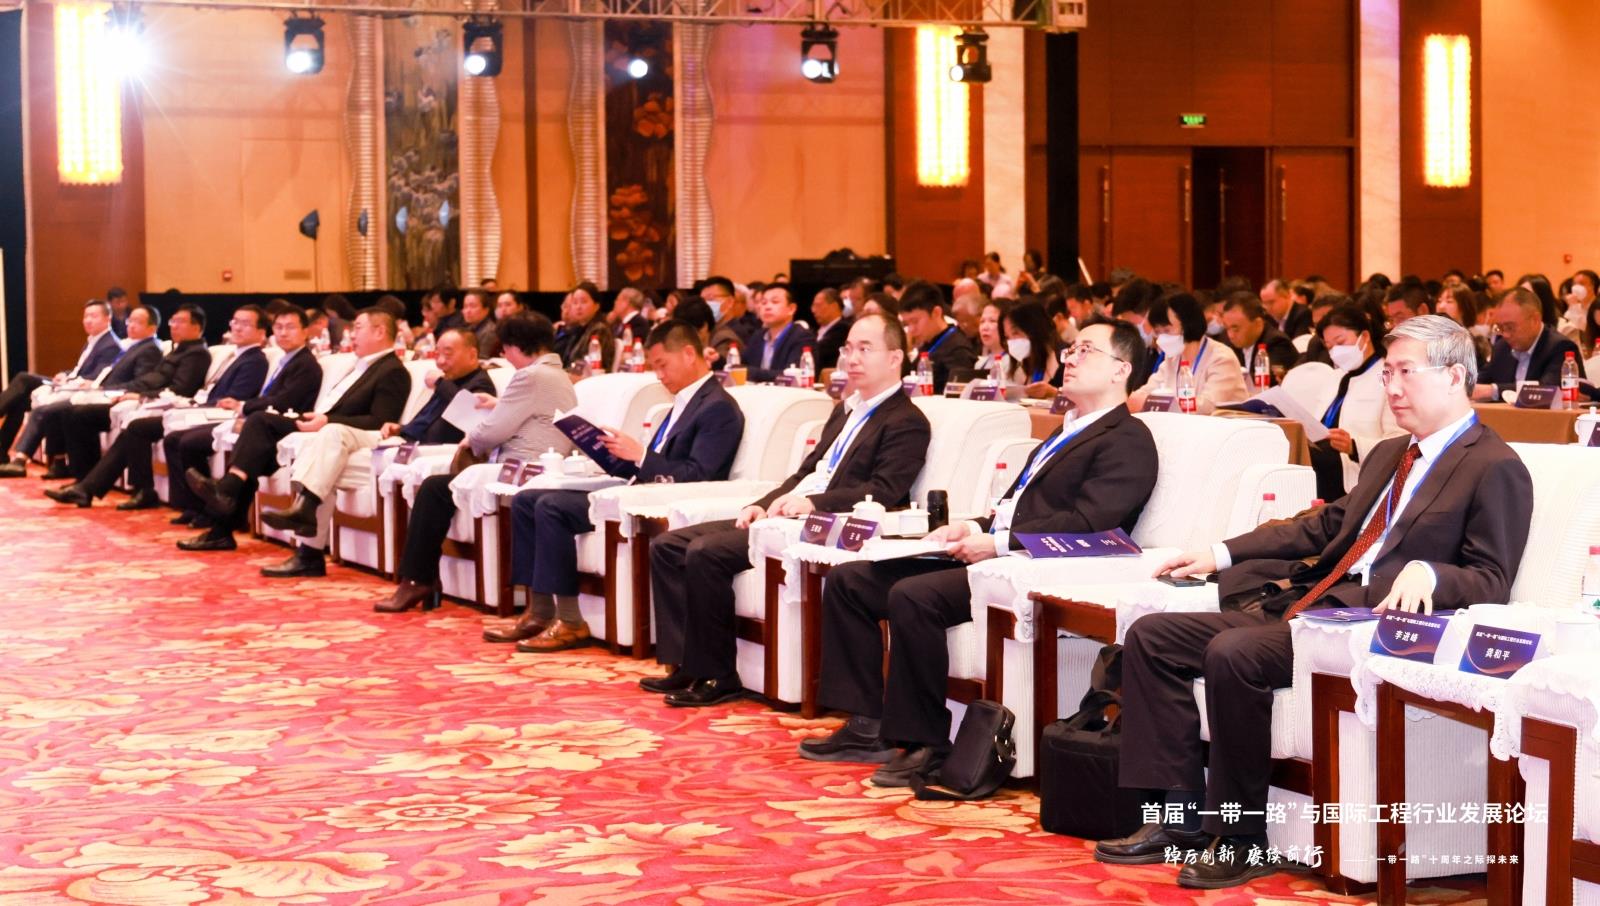 郑超常务副会长受邀出席首届“一带一路”与国际工程行业发展论坛并作主题发言